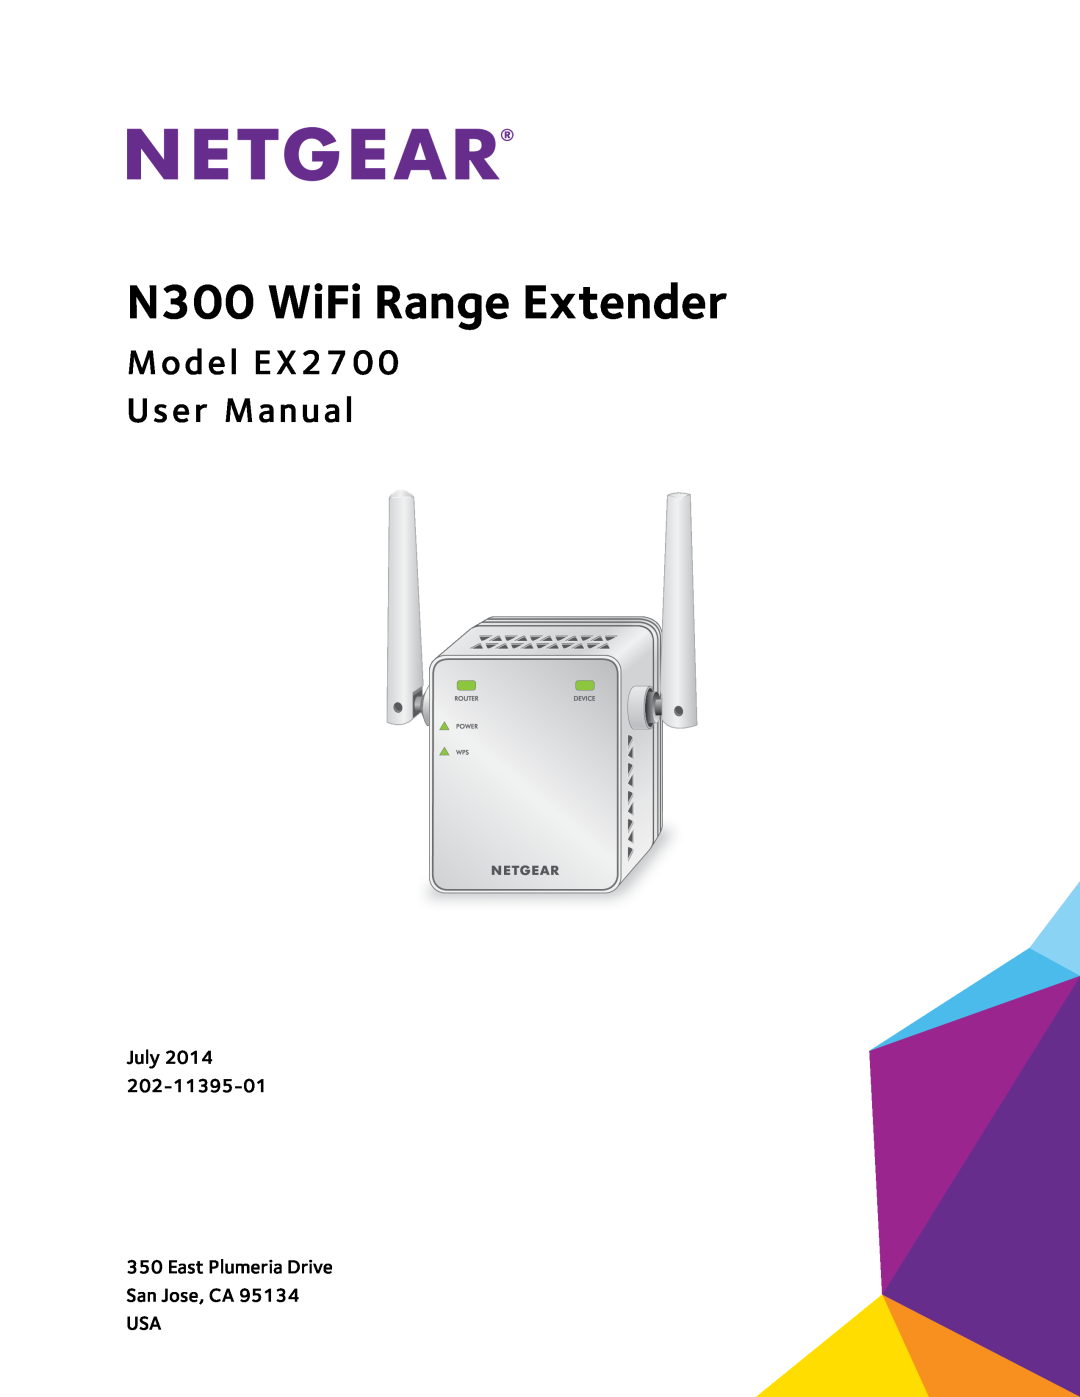 NETGEAR user manual N300 WiFi Range Extender, Model EX2700 User Manual 